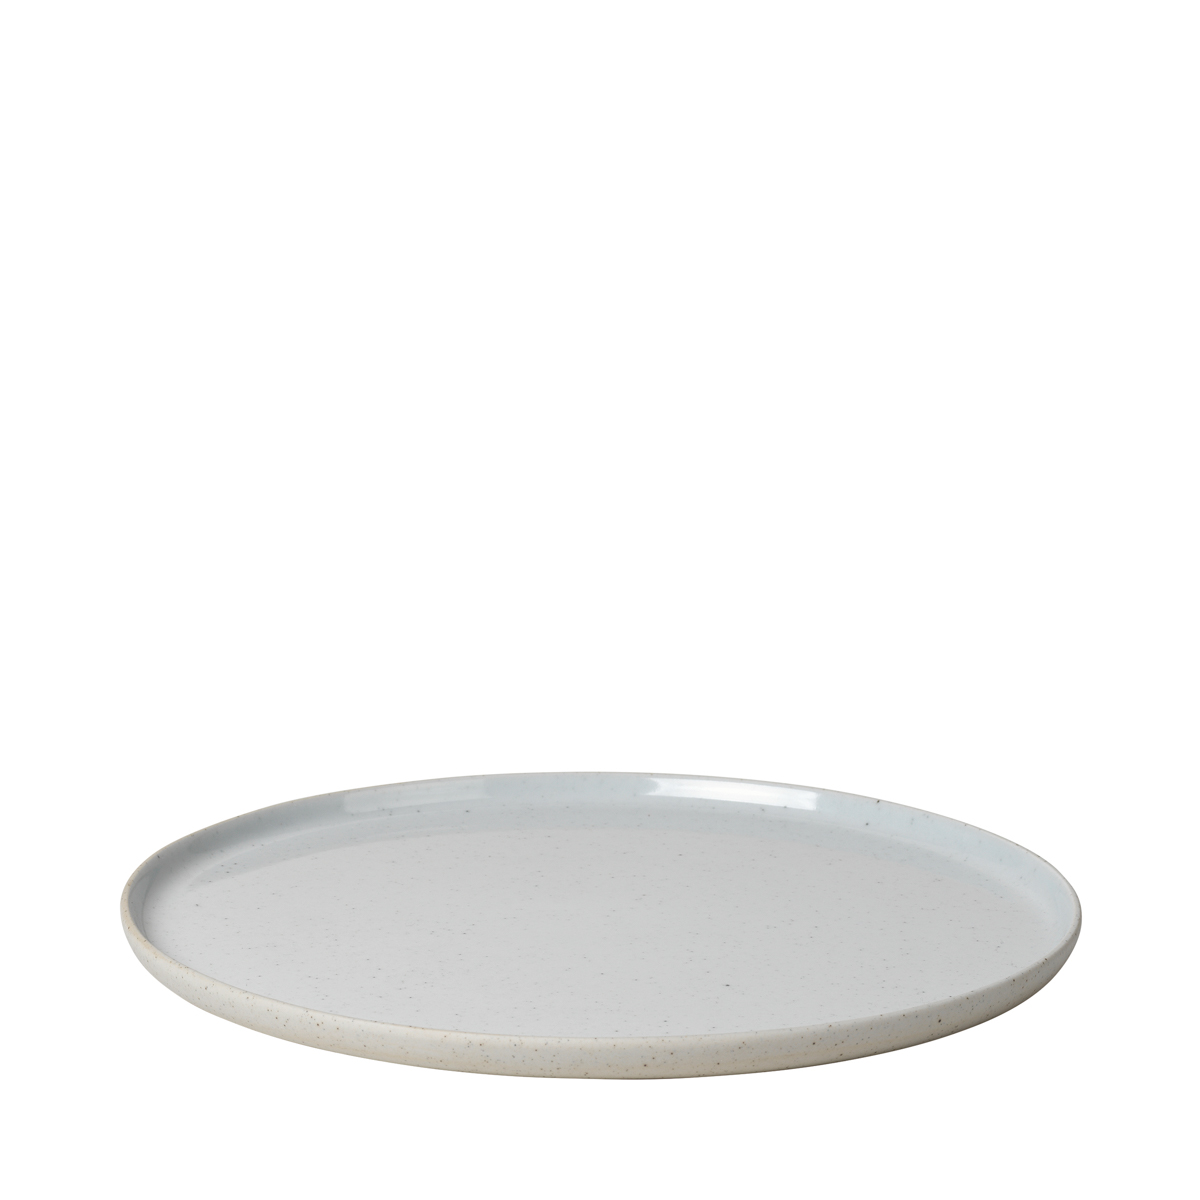 Speiseteller -SABLO- Cloud, Ø 26 cm. Material: Keramik. Von Blomus.